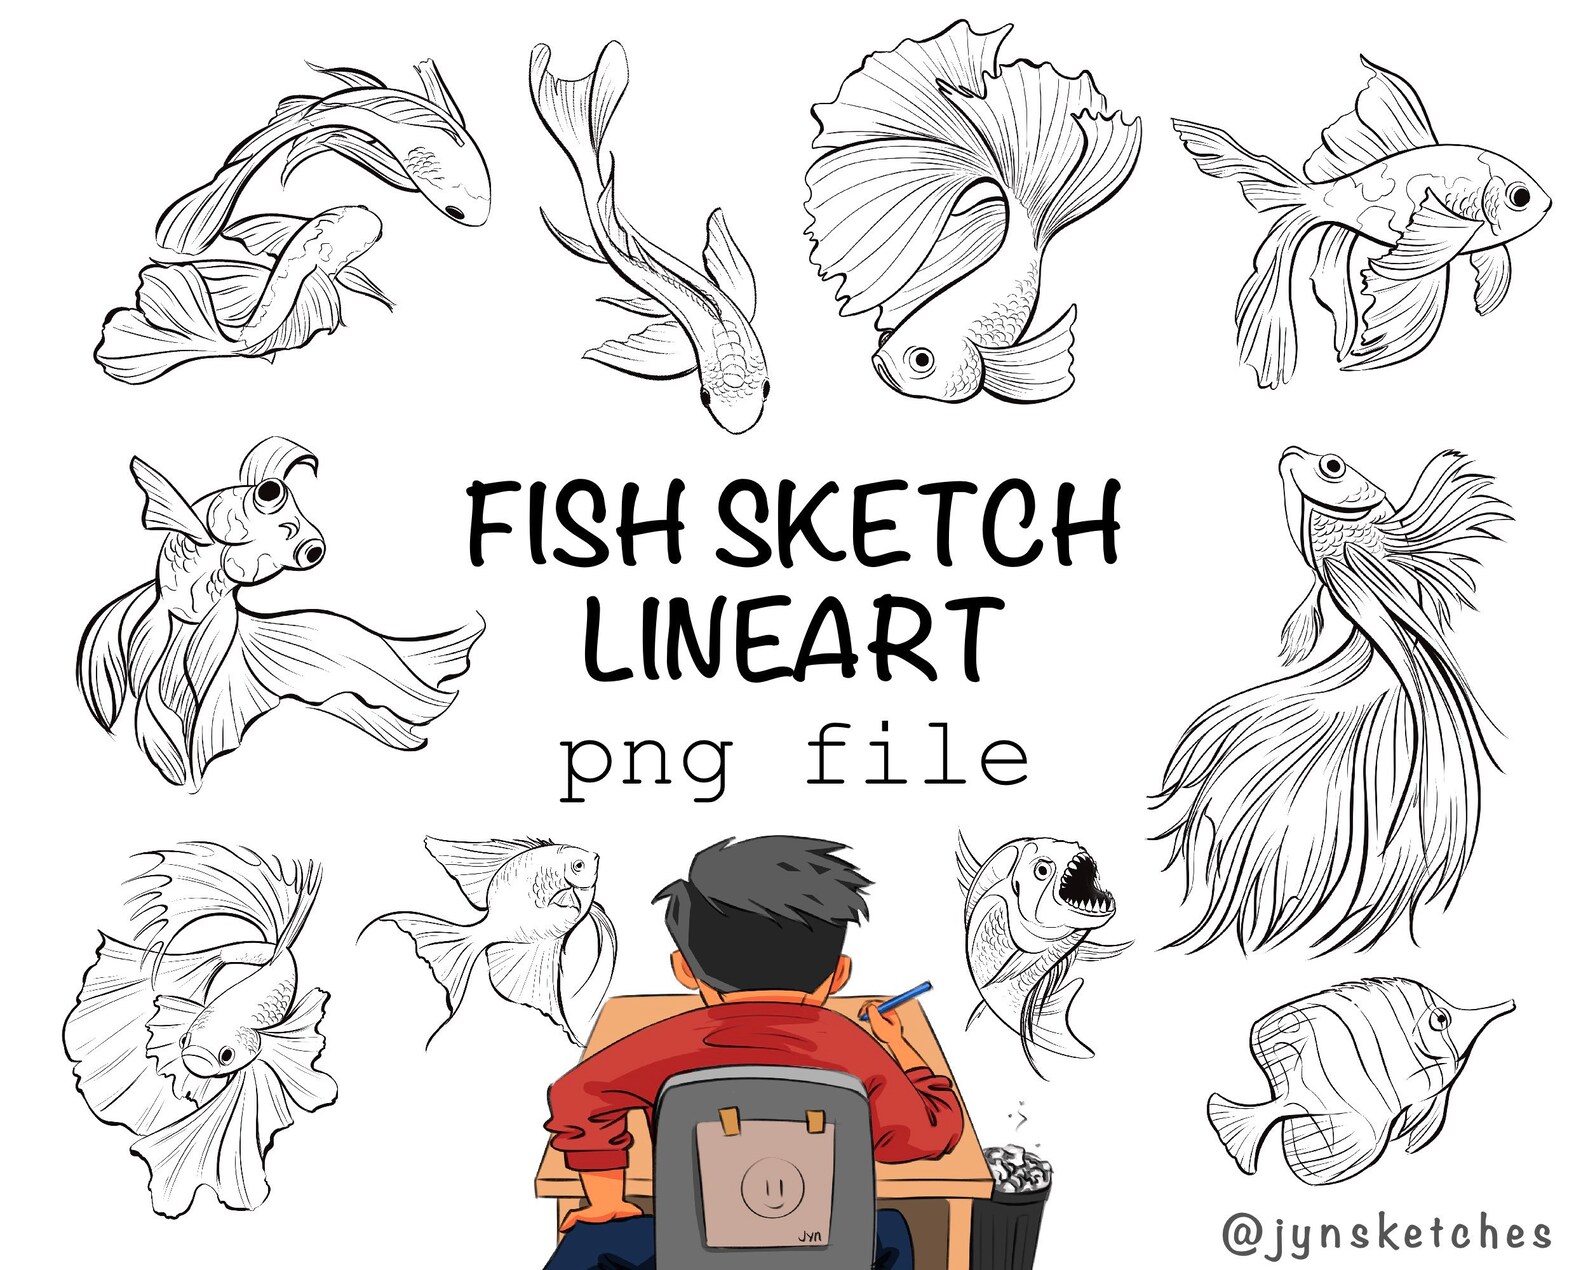 Full hand drawn fish illustration.